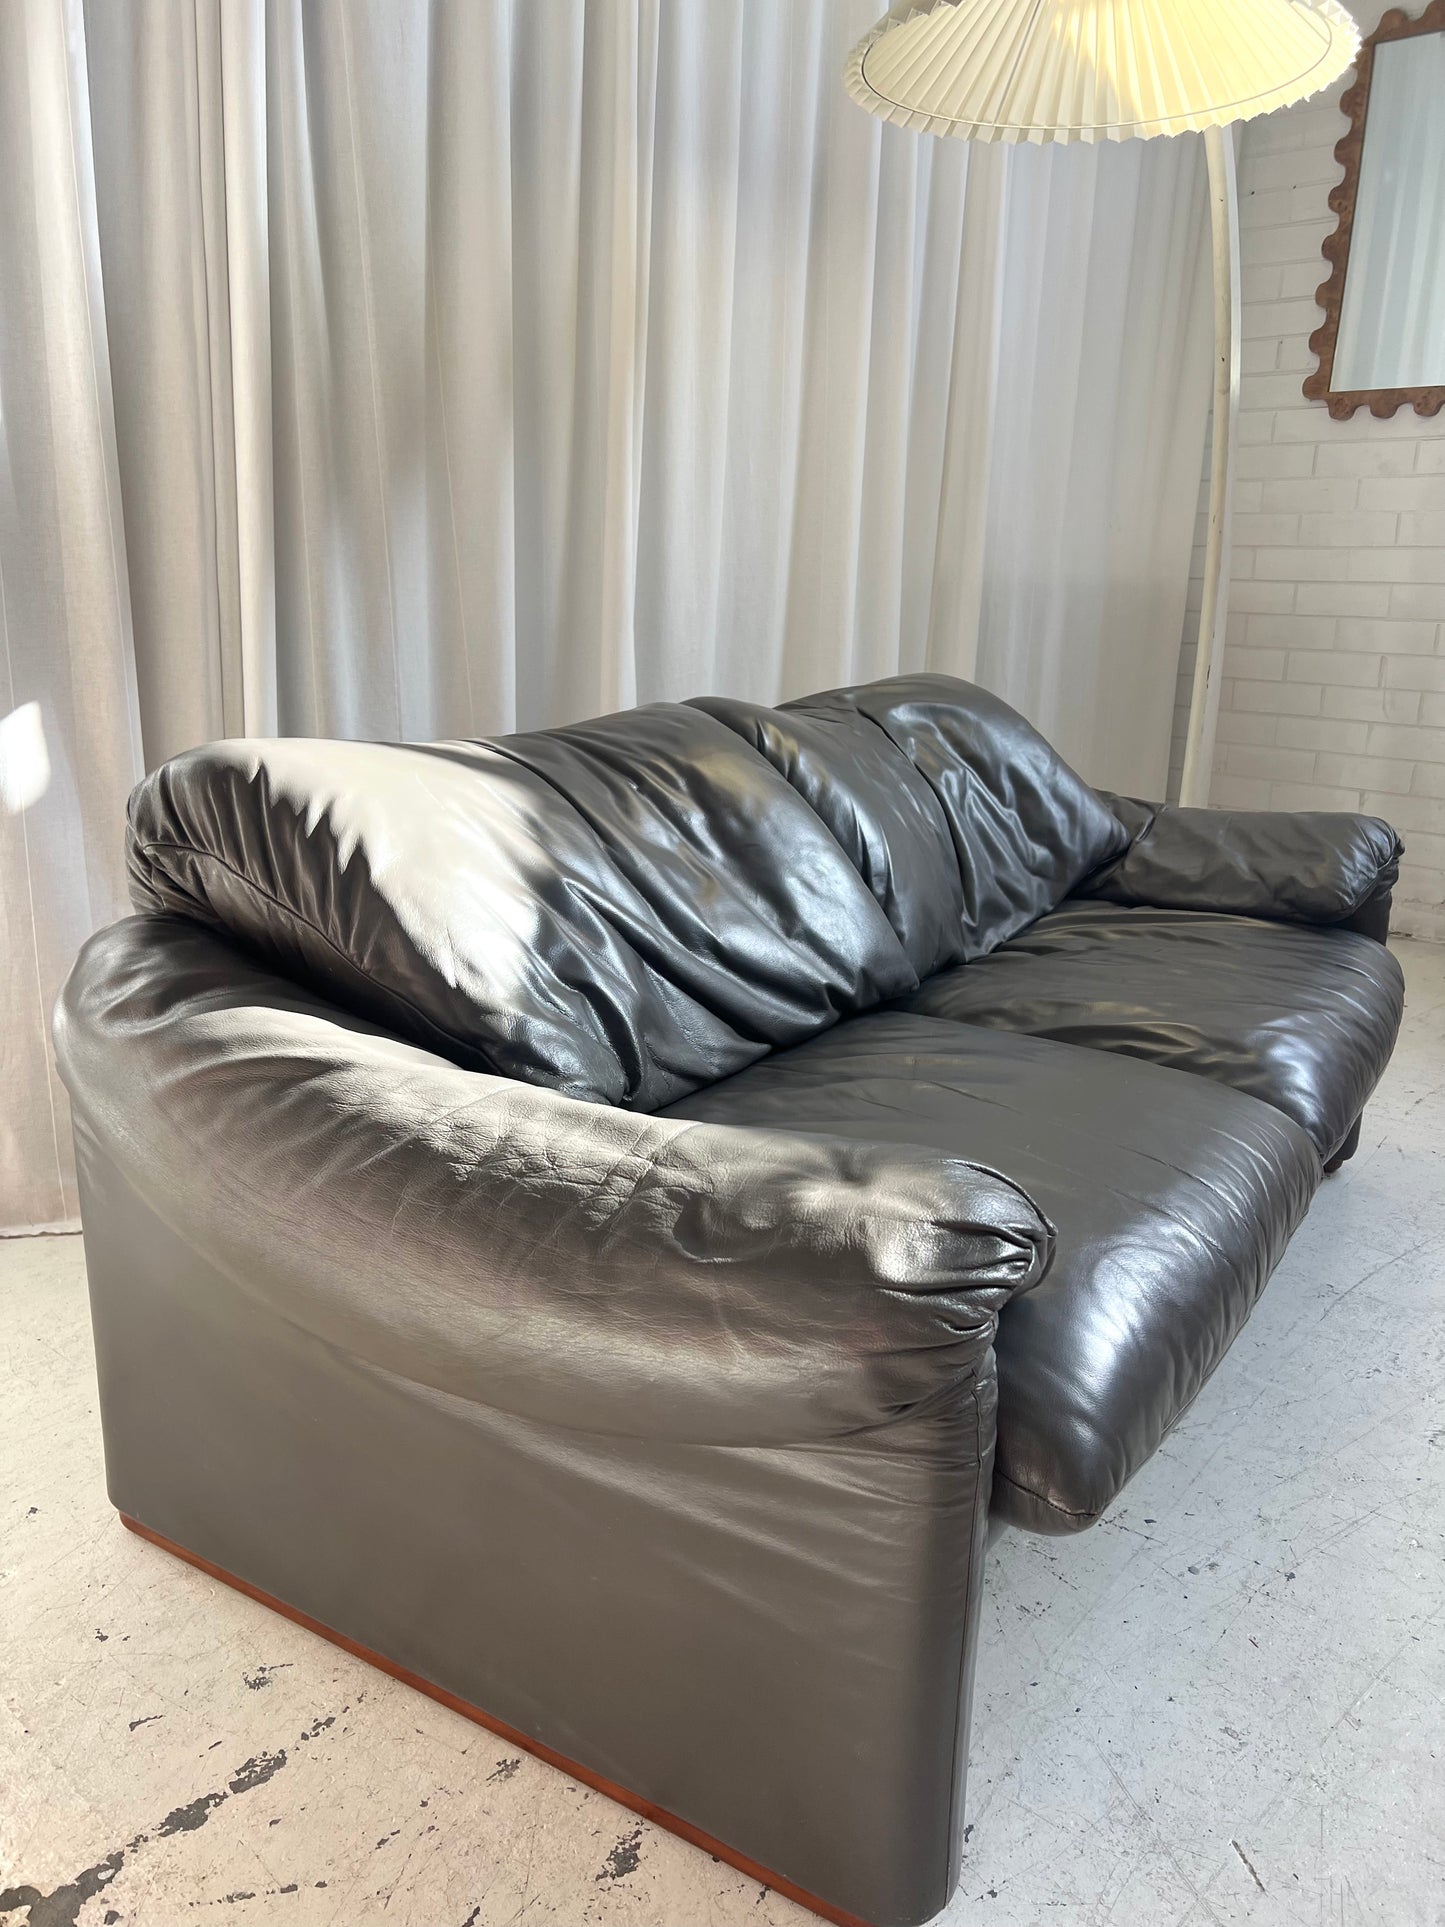 Cassina Maralunga Grey Leather Sofa by Vico Magistretti